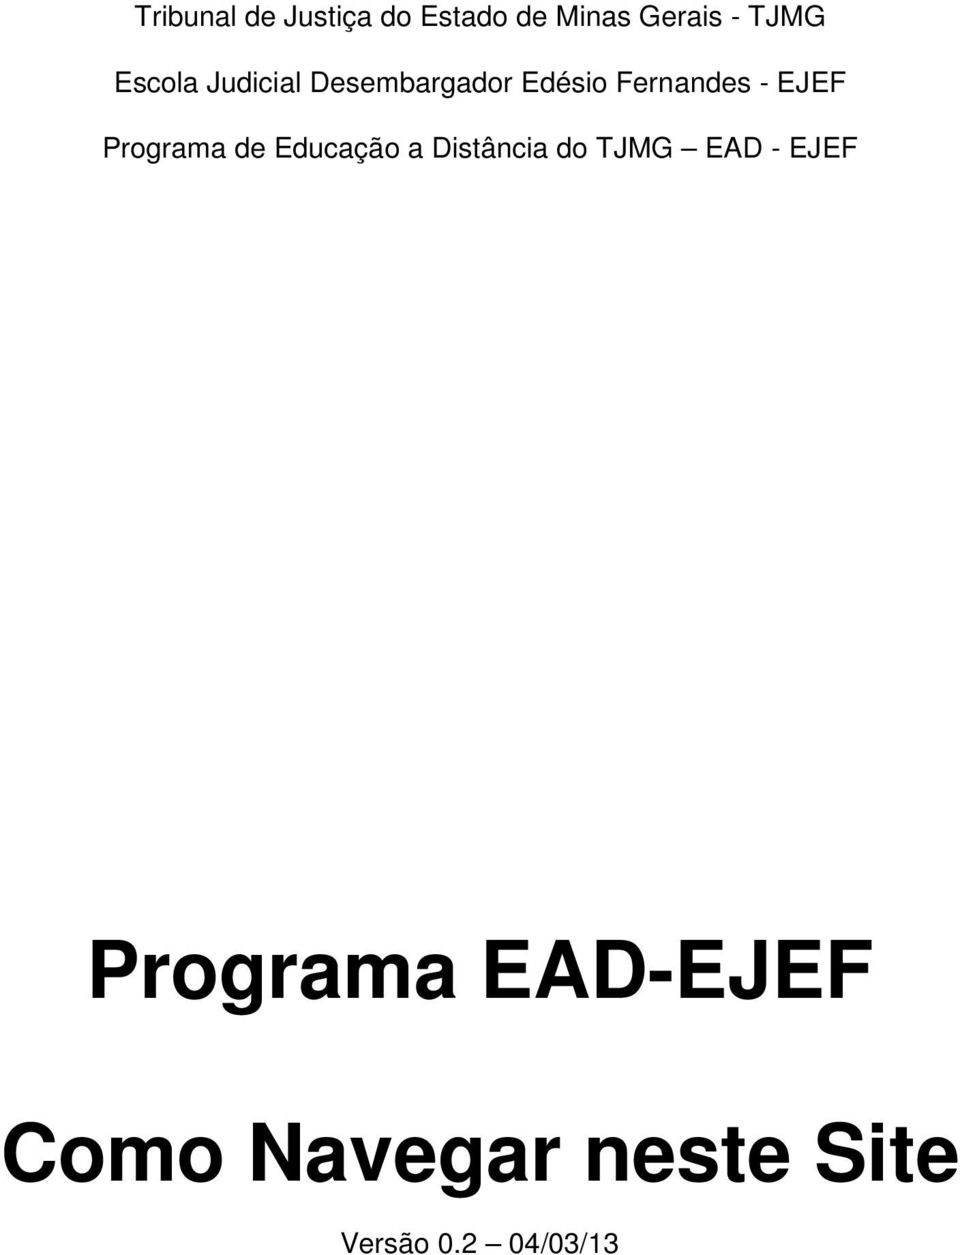 Programa de Educação a Distância do TJMG EAD - EJEF